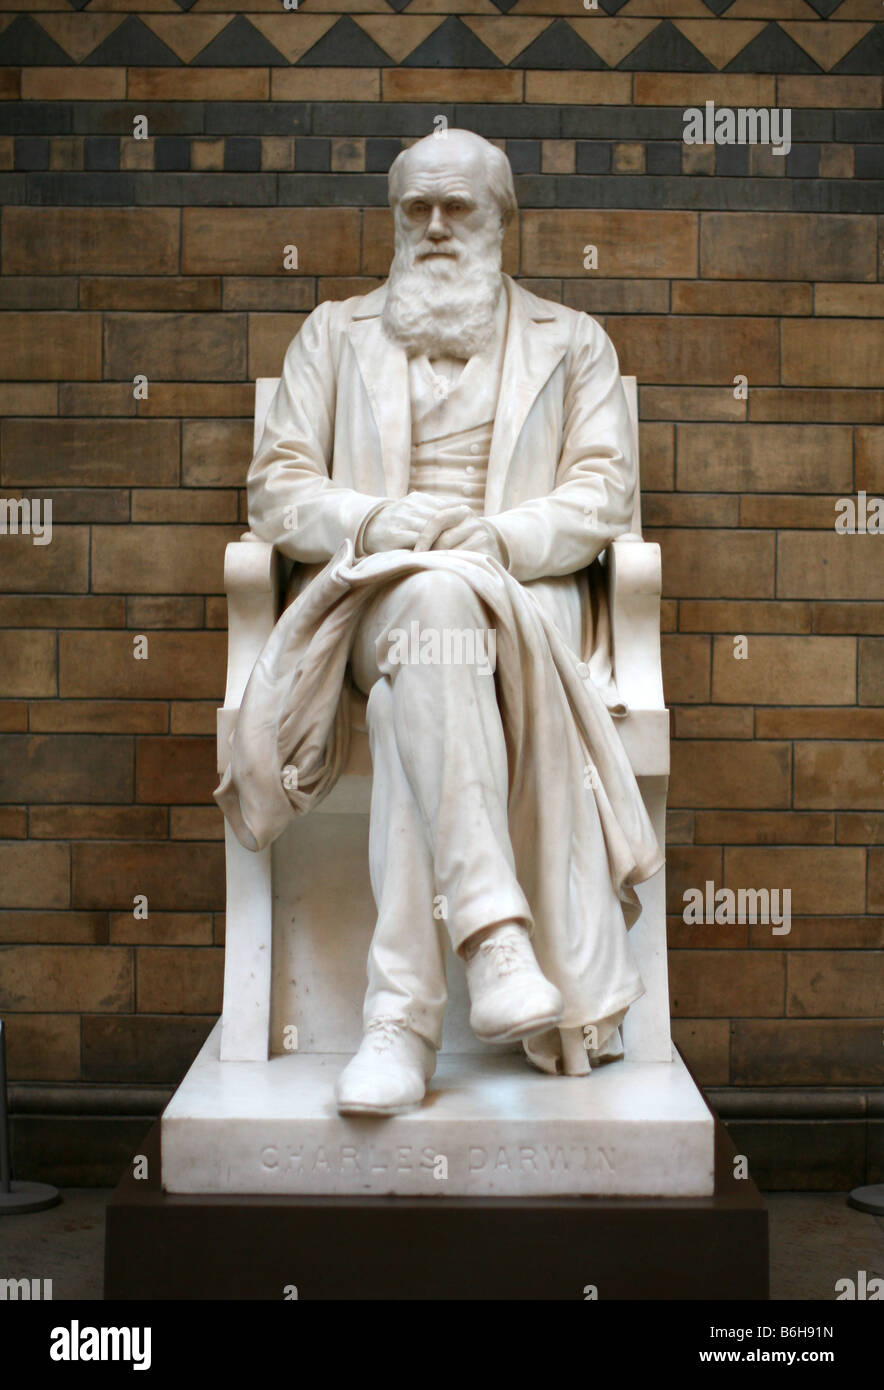 Sculpture de Charles Darwin au Natural History Museum, Londres Banque D'Images